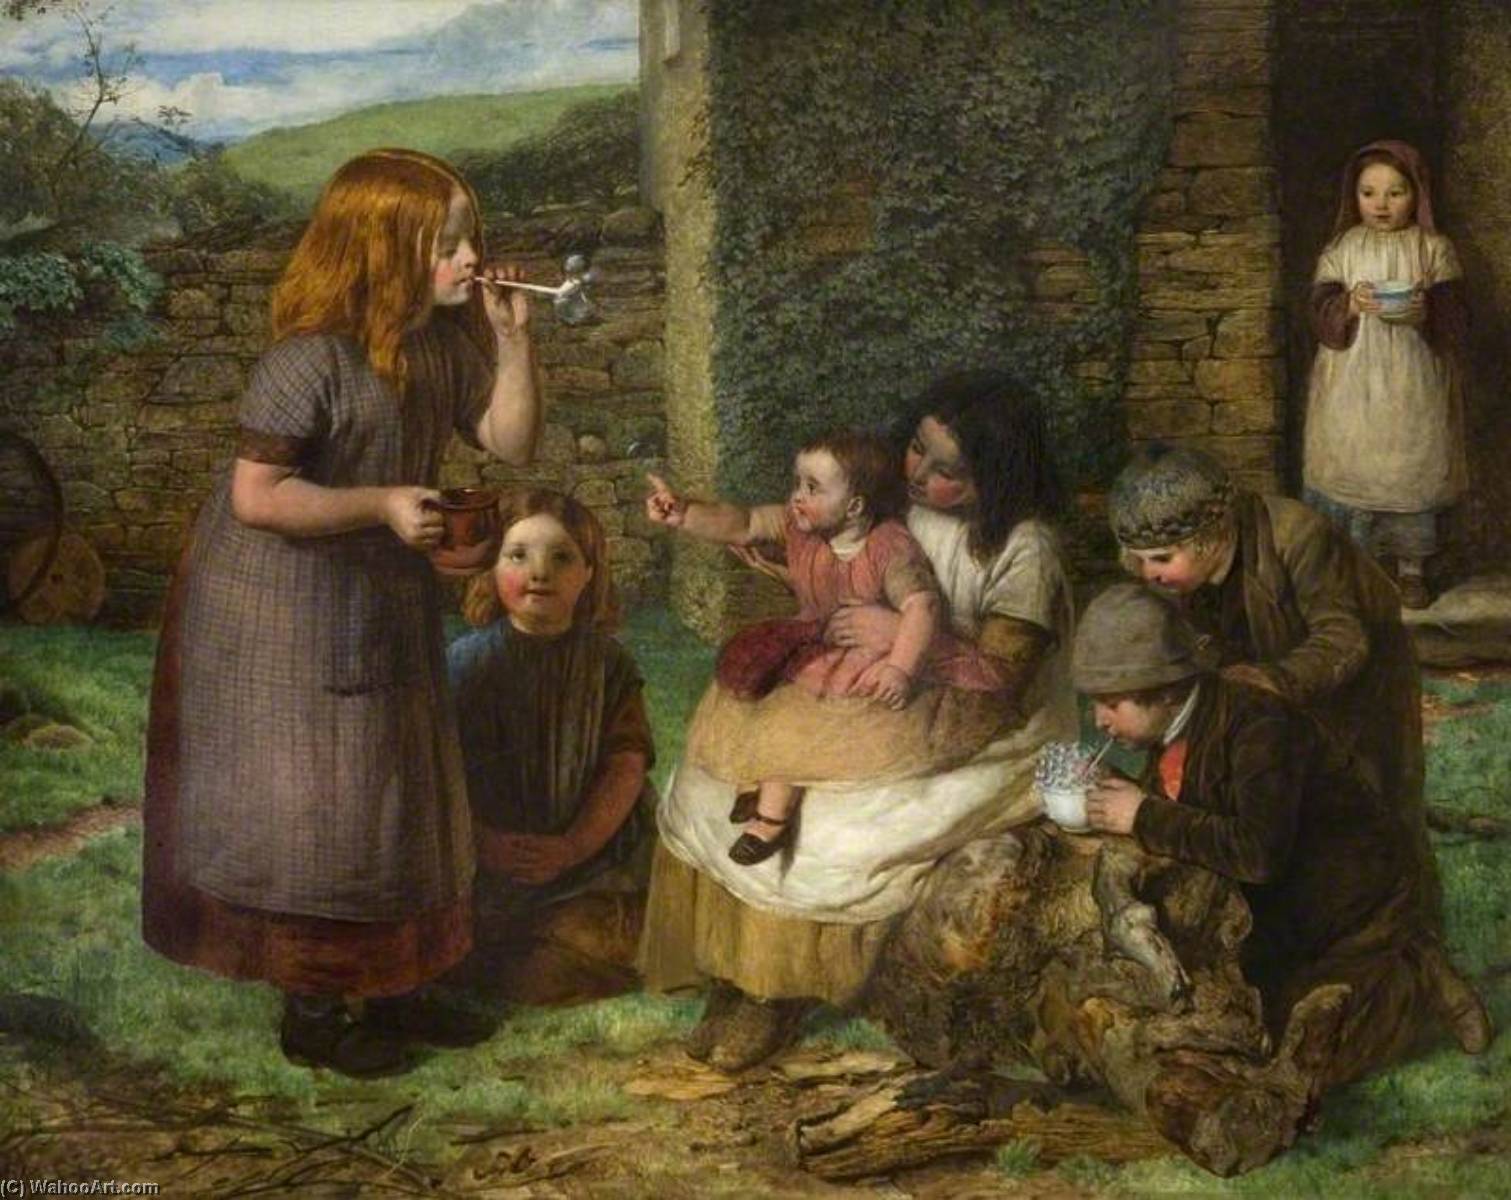 Игры древних детей. Джон Доусон Уотсон картины. Джон Доусон Уотсон художник. John Dawson Watson (1832-1892) Painter. Джон Эверетт Милле мыльные пузыри.